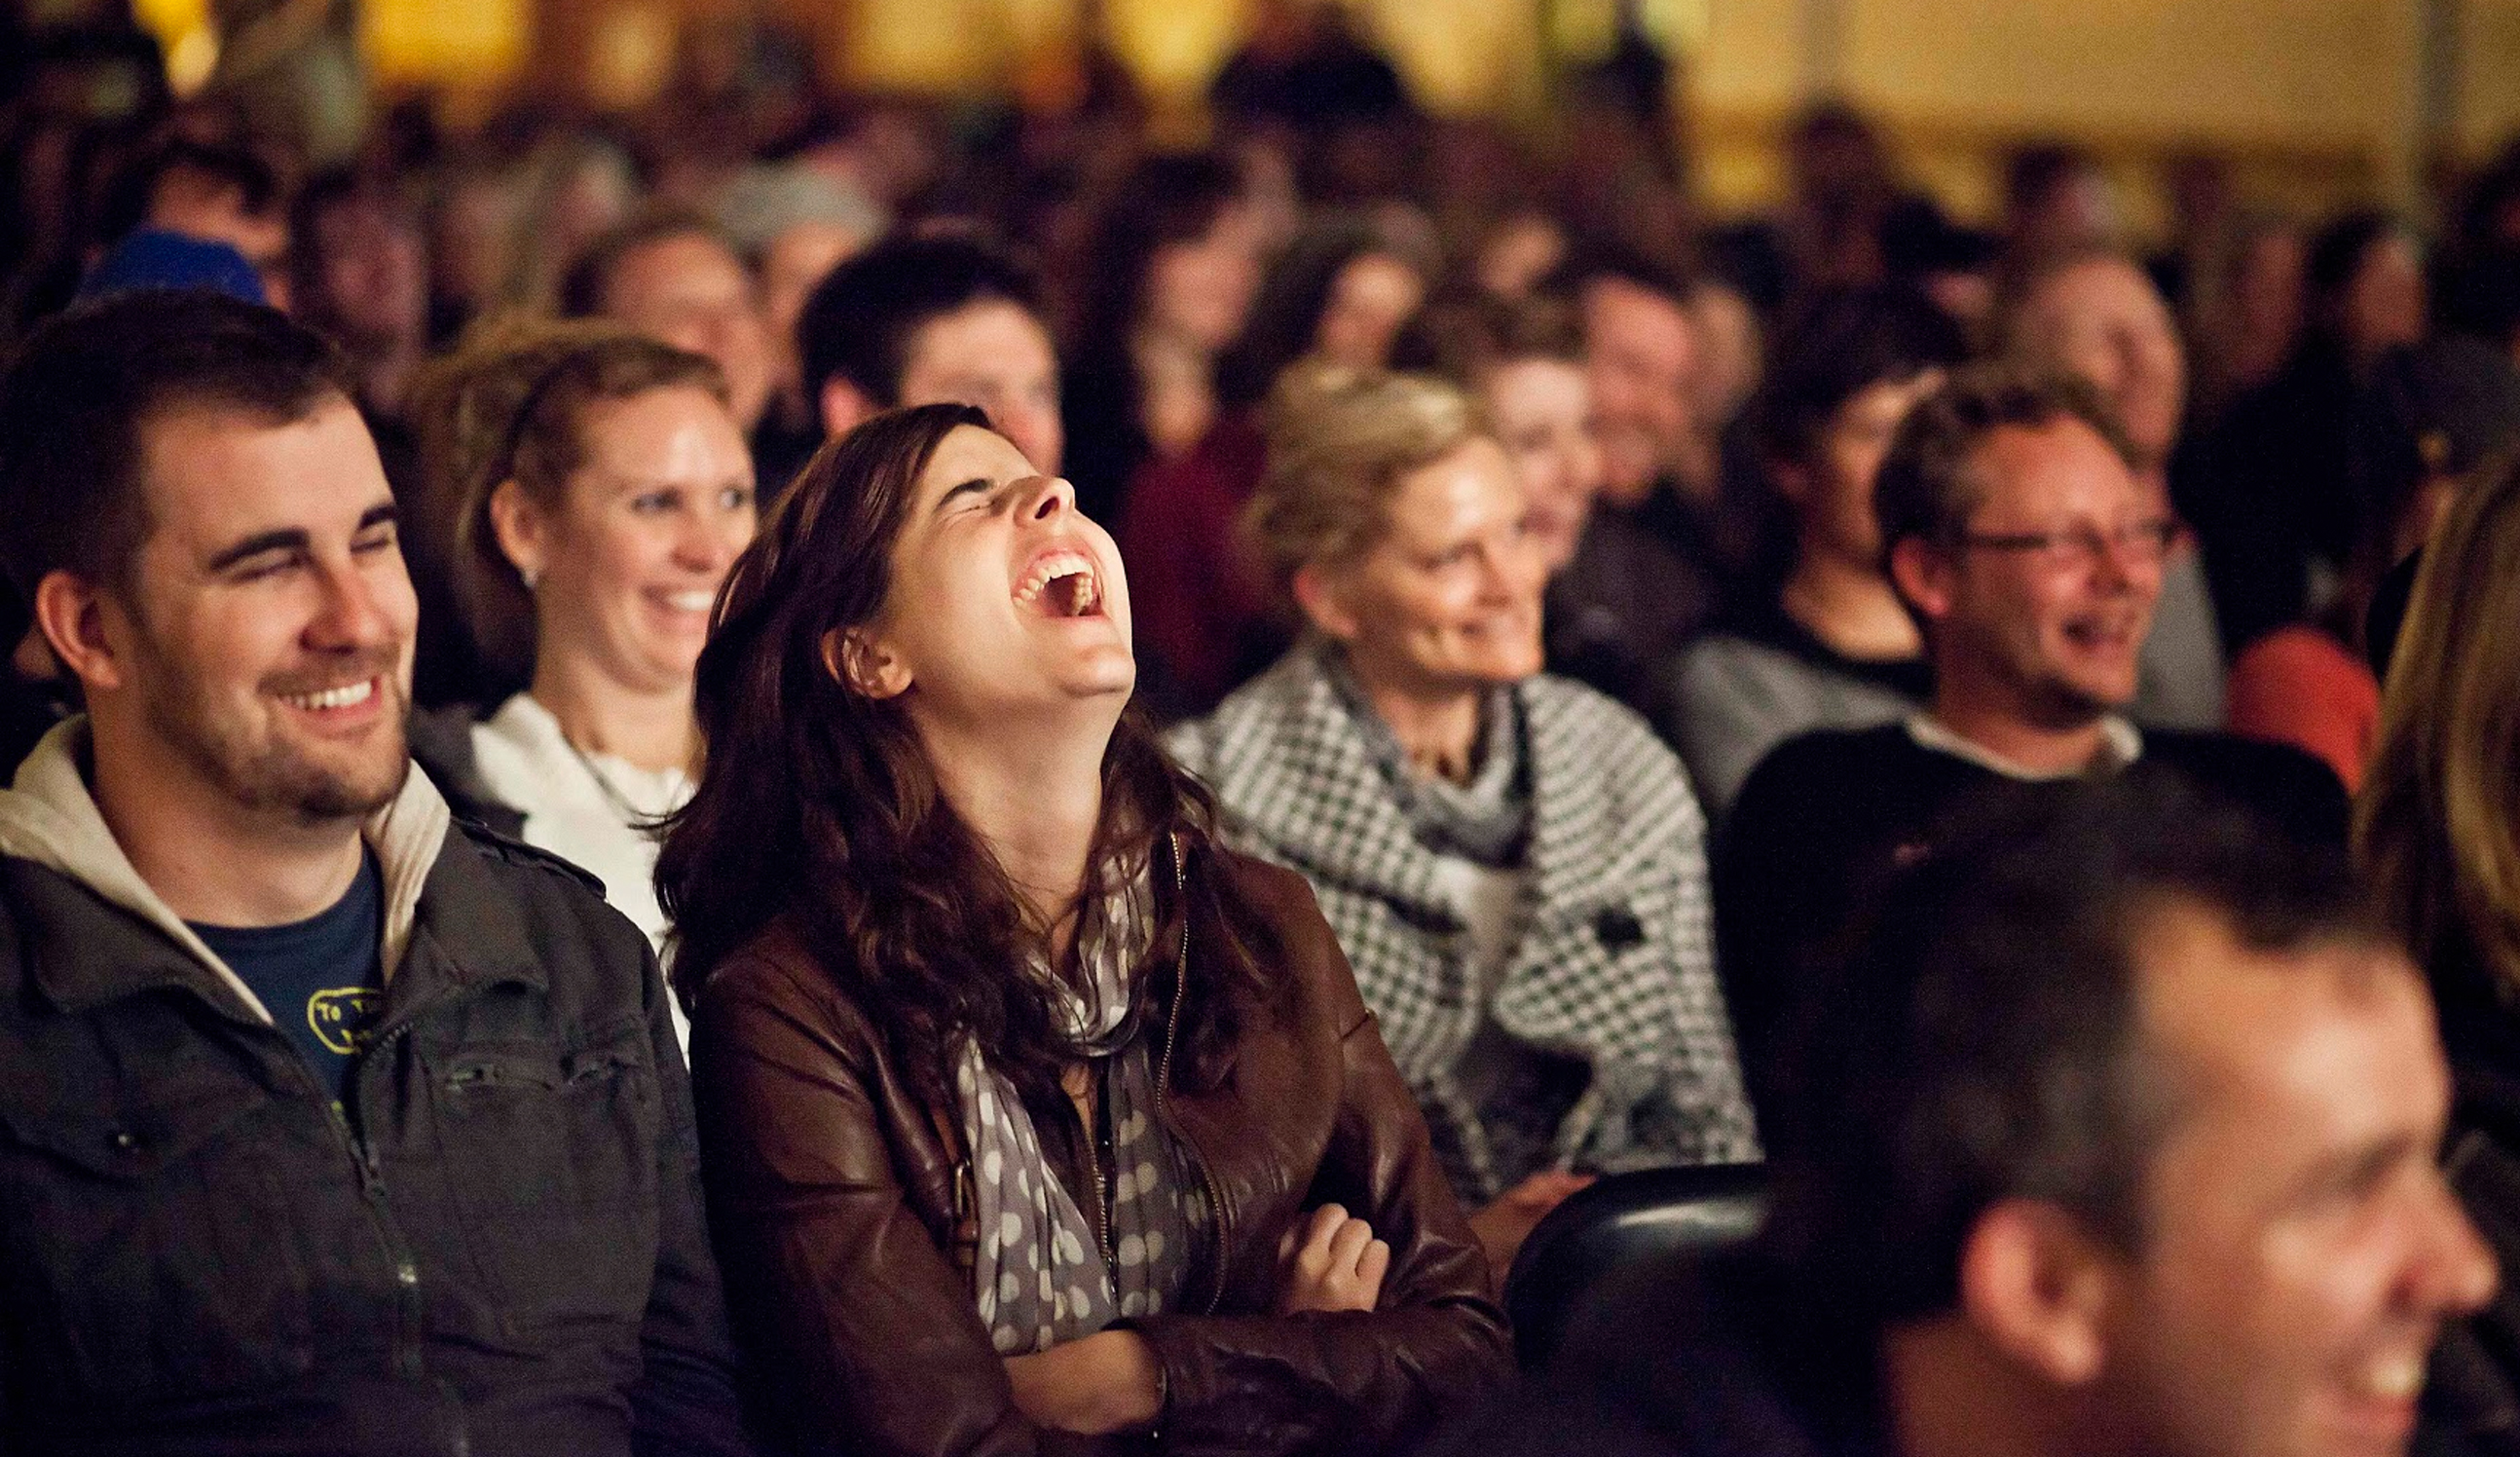 Восторг публики. Зрители смеются. Зрители в зале театра. Зрители в зале смеются. Толпа смеется.